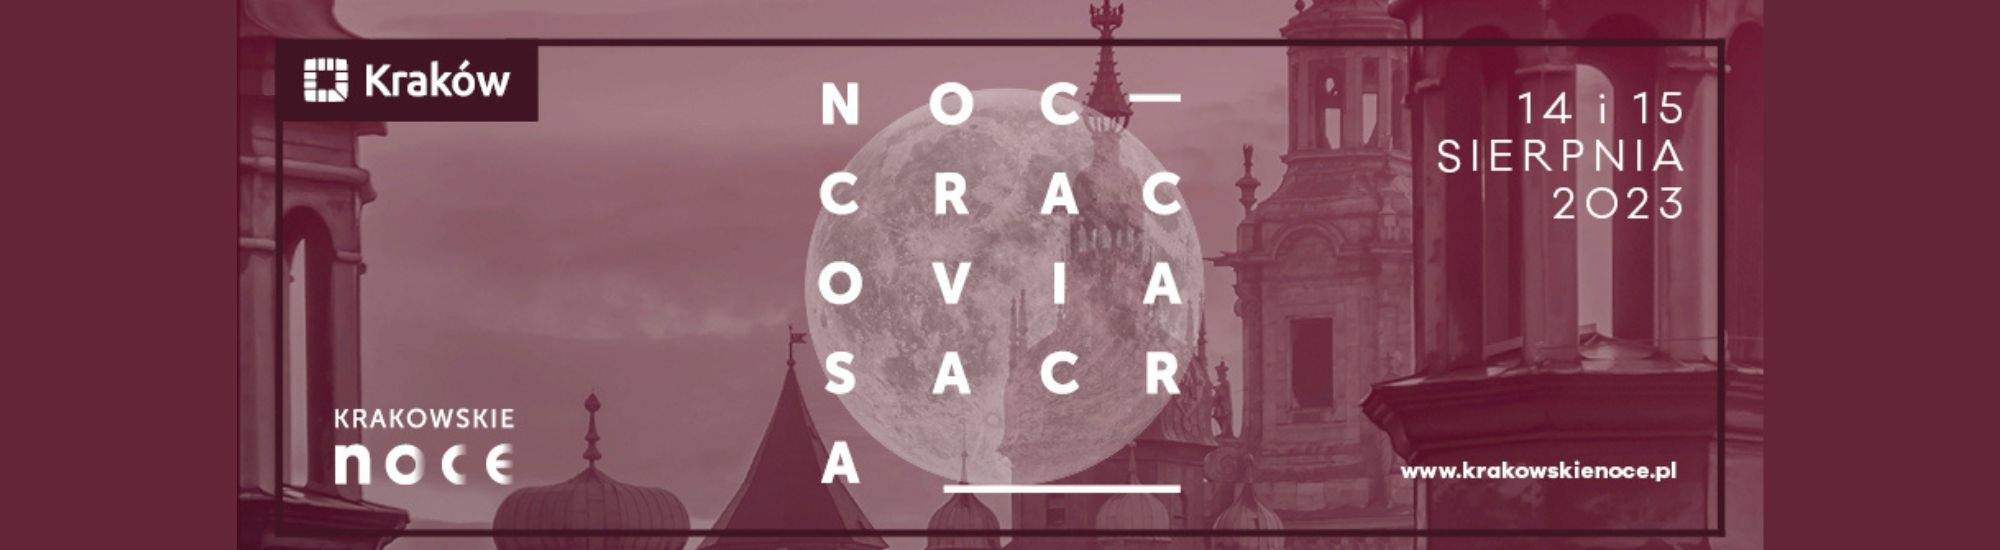 Heilige Nachten van Krakau: Concerten, tentoonstellingen en de ontdekking van de geheimen van de kerk